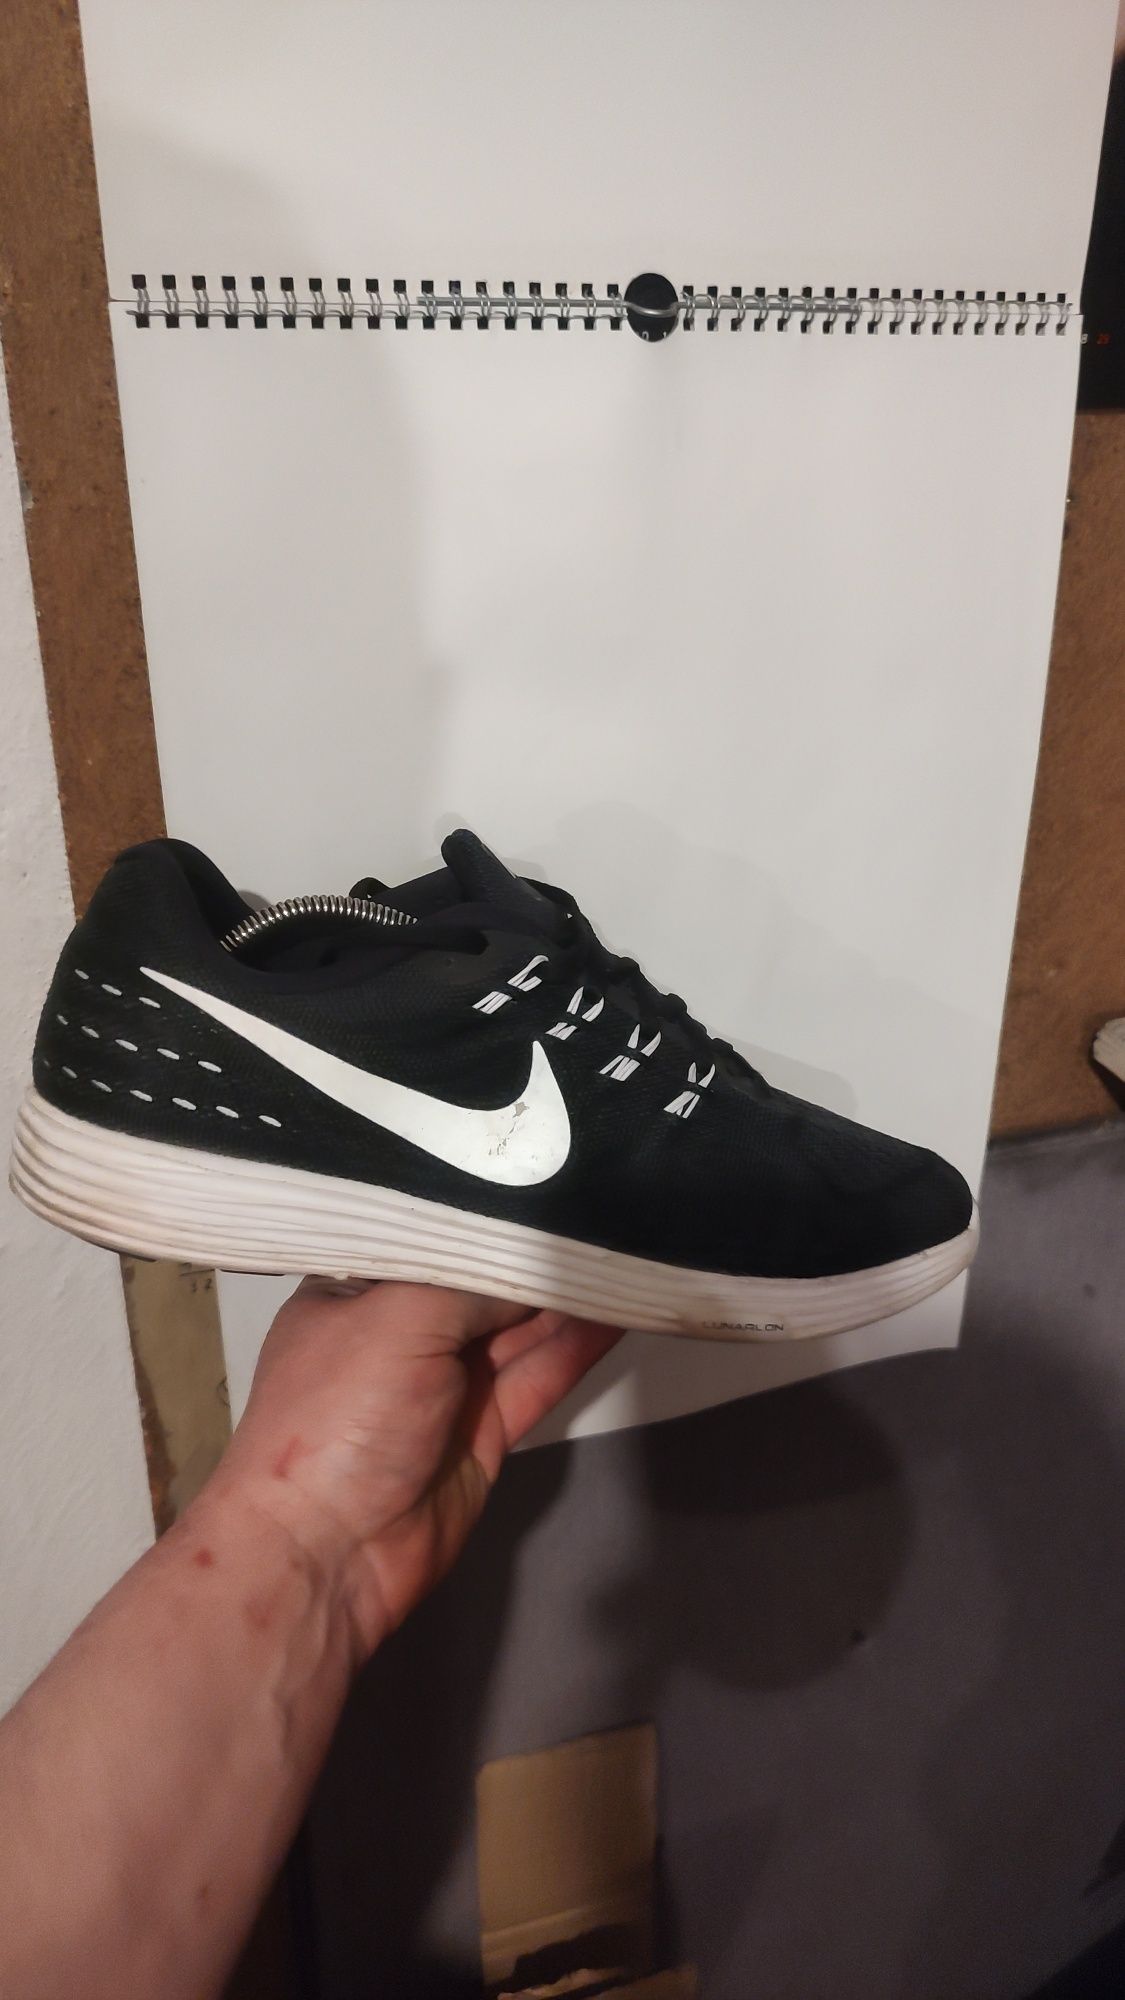 Buty sportowe Nike Lunartempo 2. Rozmiar 44.5 wkładka 28.5cm